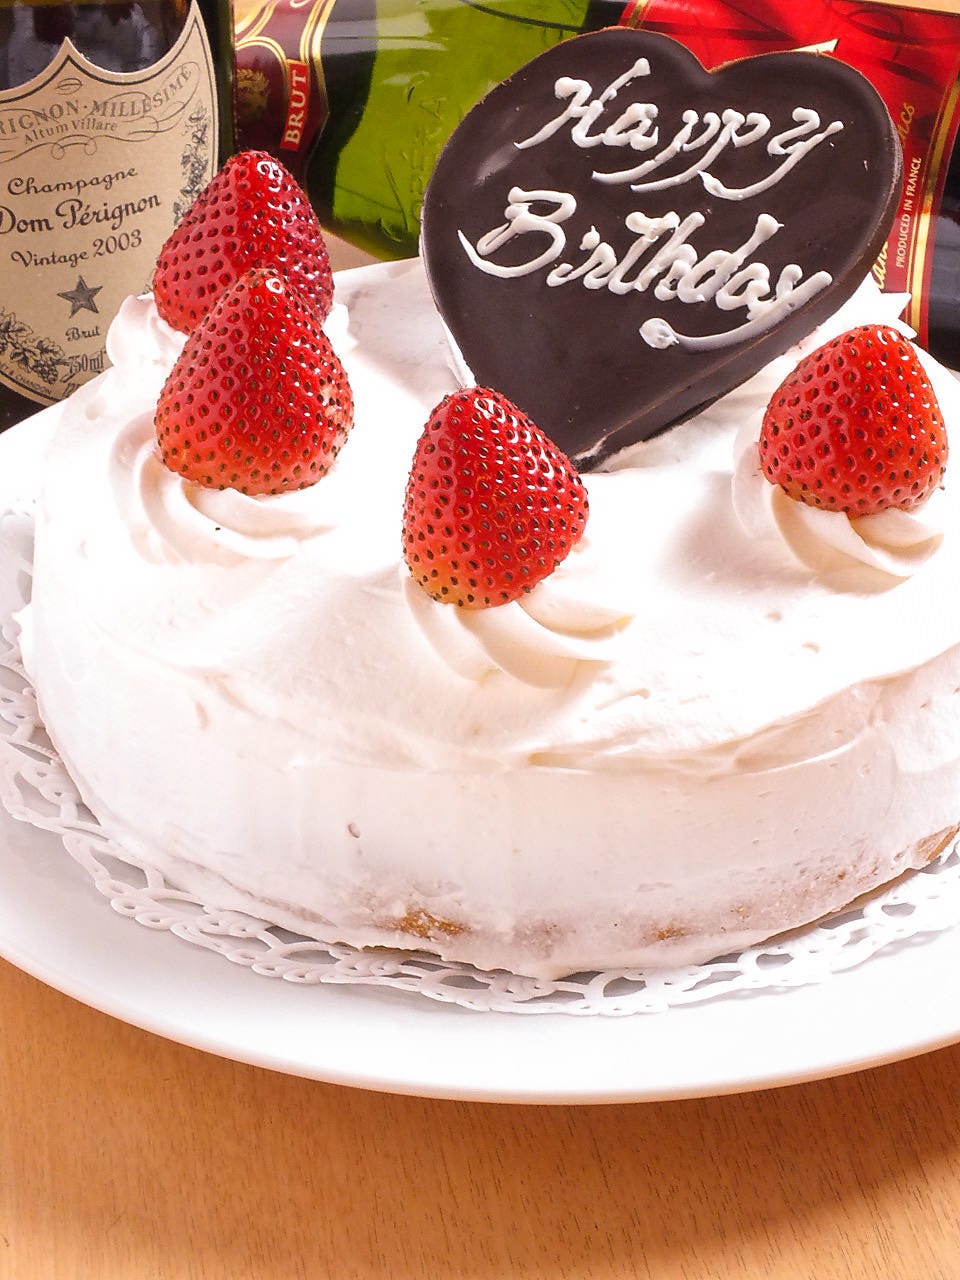 ベスト ジョイ サウンド 誕生 日 ケーキ 無料のワンピース画像